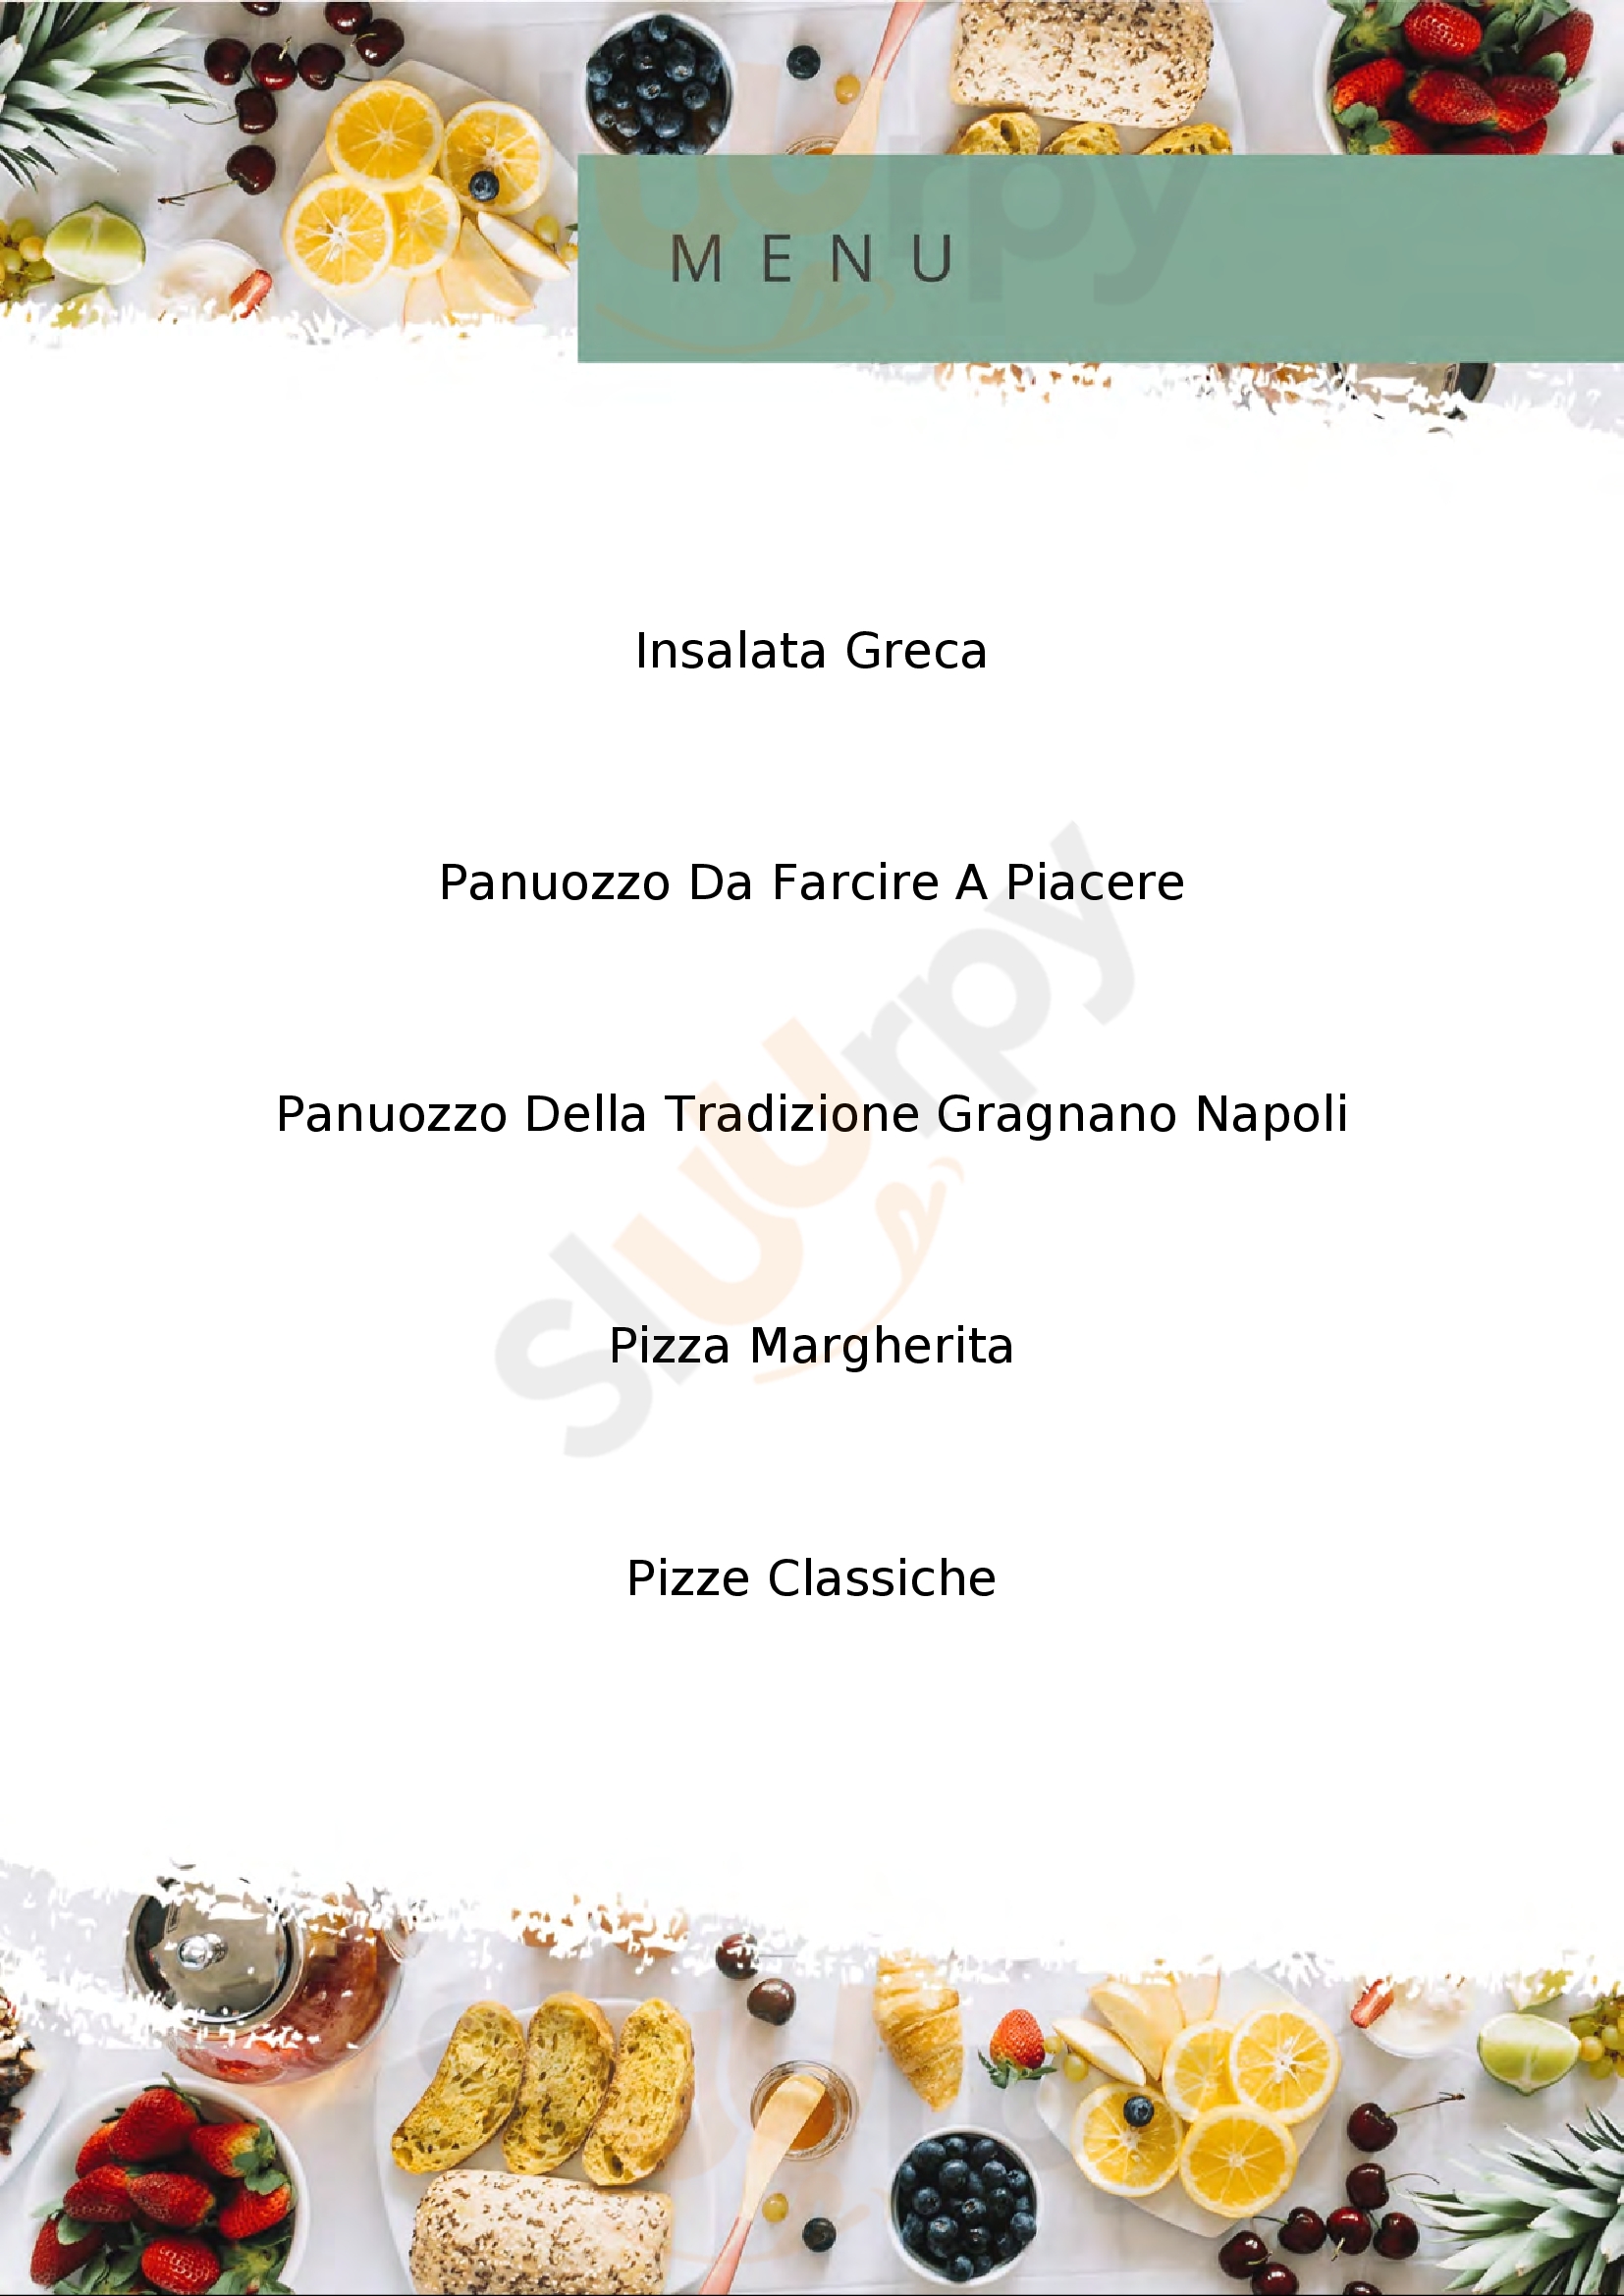 Pizzeria Maicol Pizza Reggio Emilia menù 1 pagina